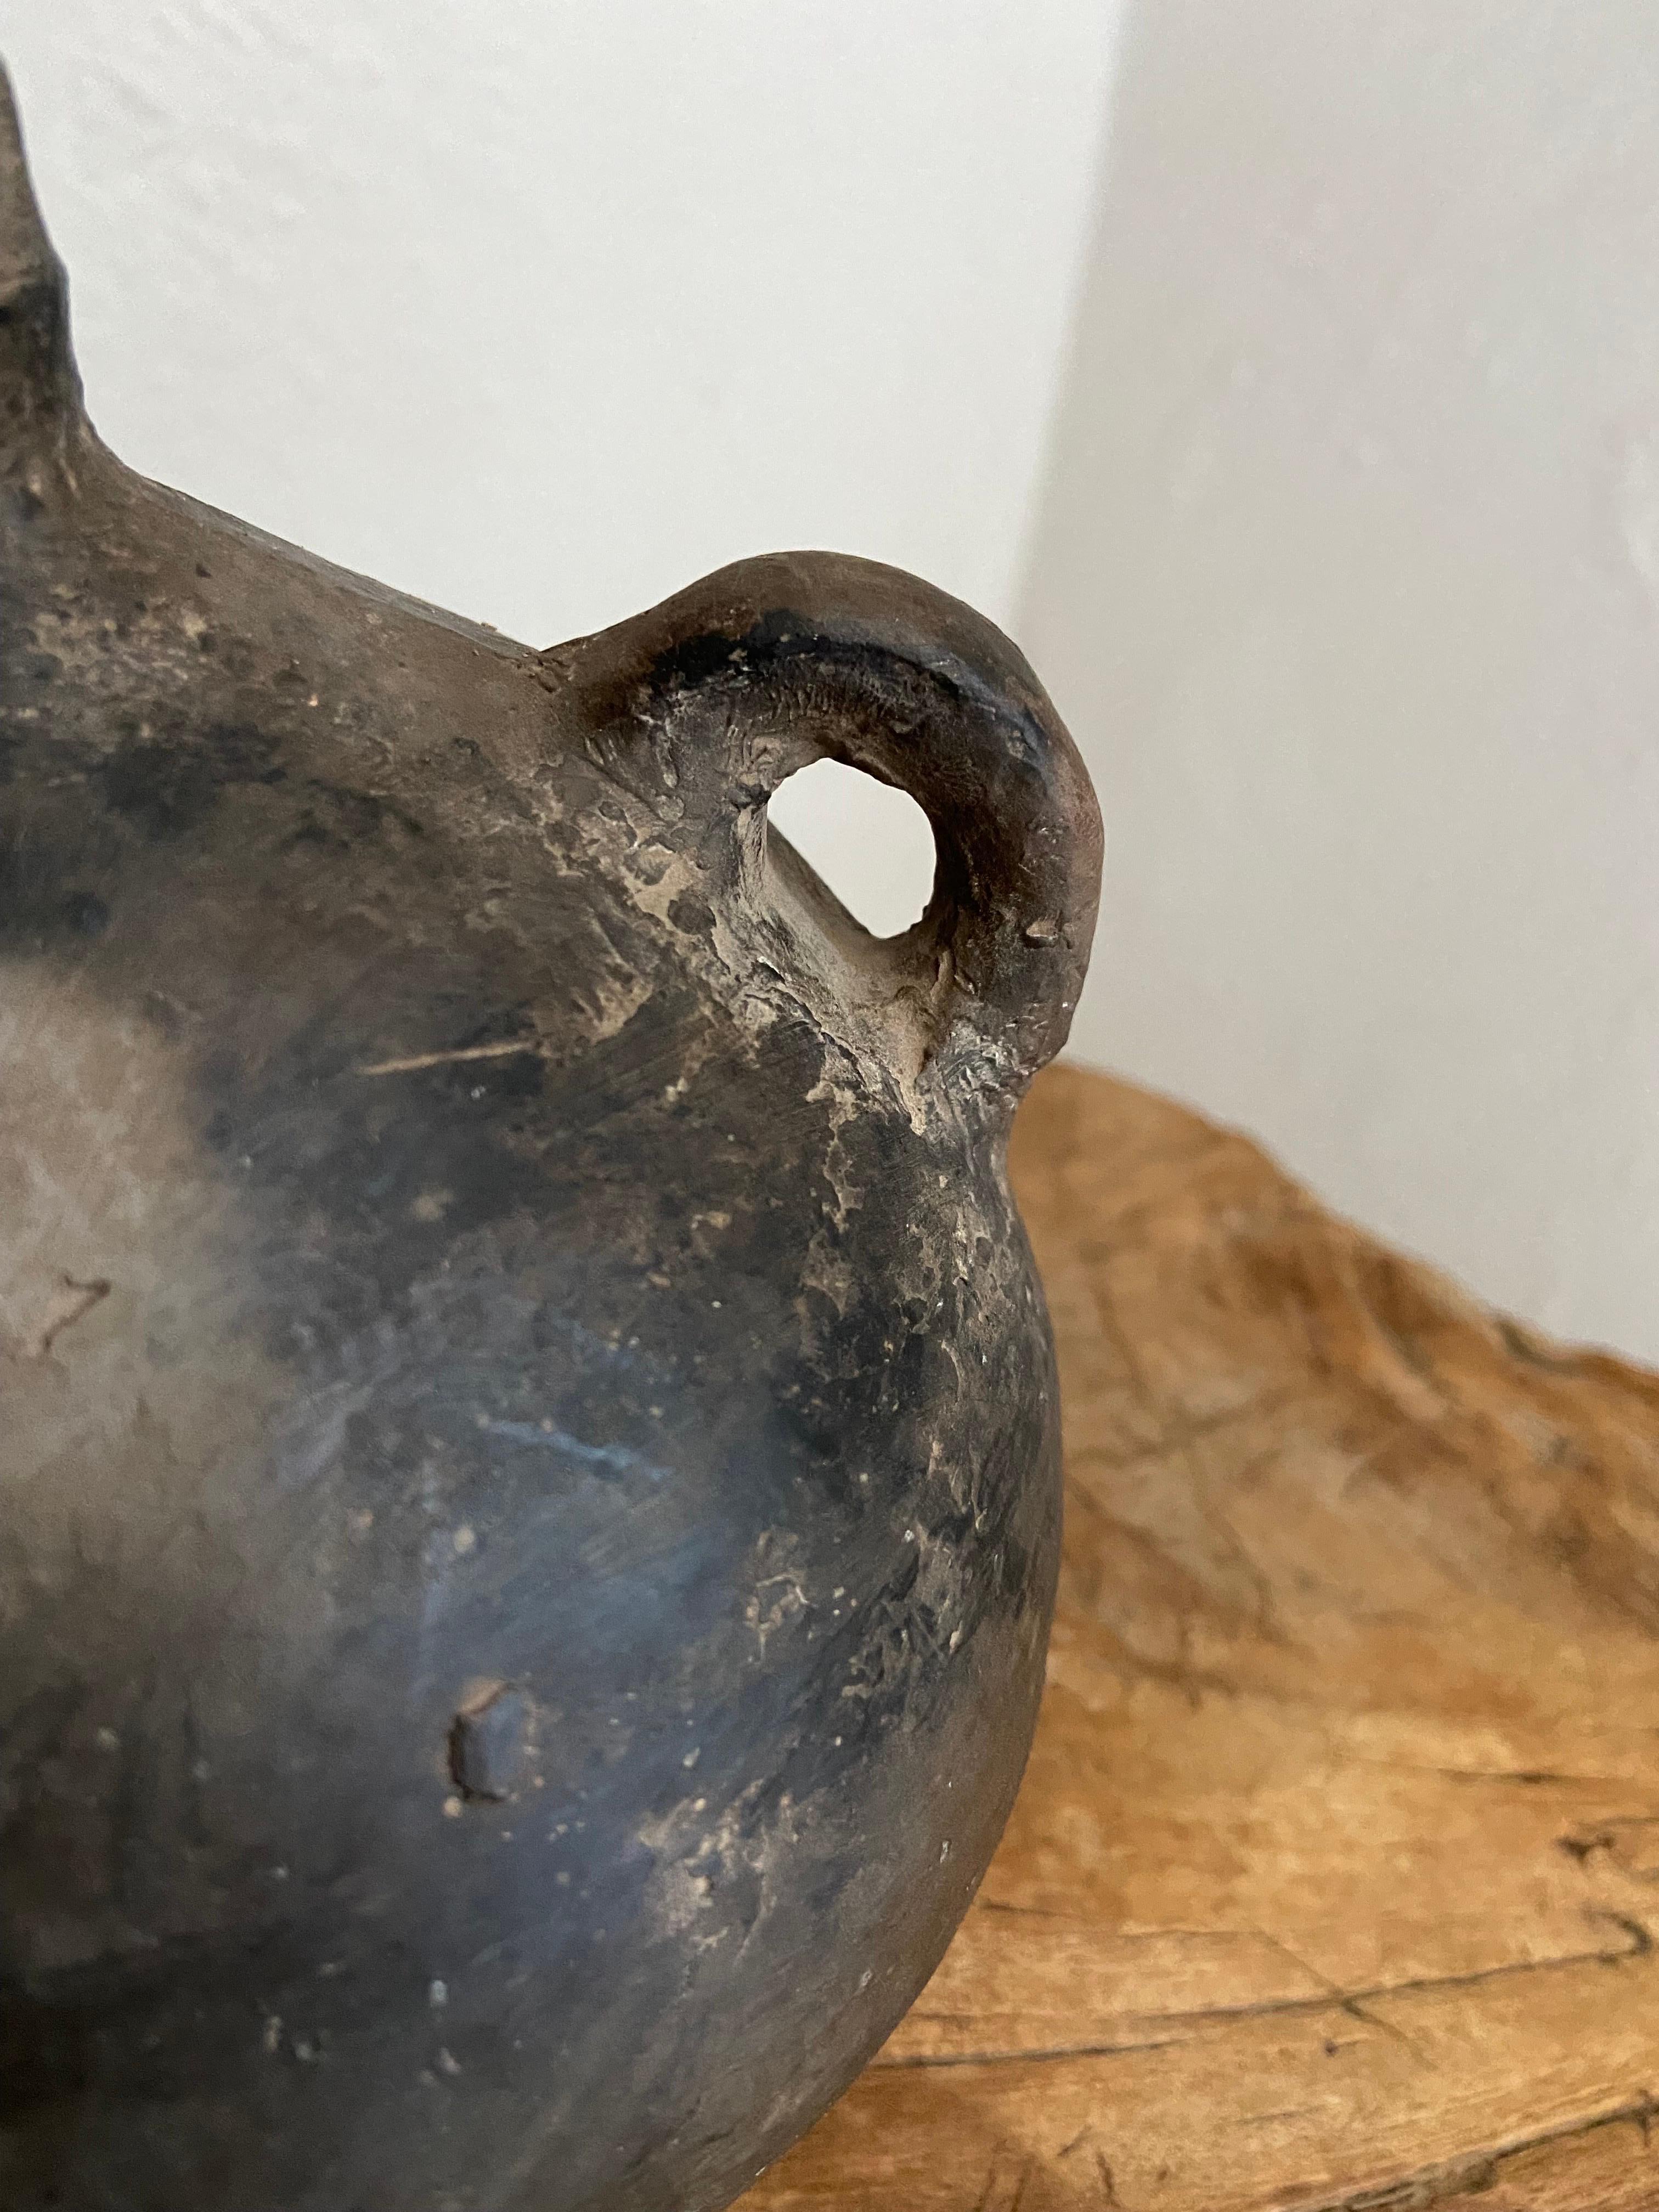 Ceramic Mid 20th Century Black Clay Mezcal Jug from Oaxaca, Mexico